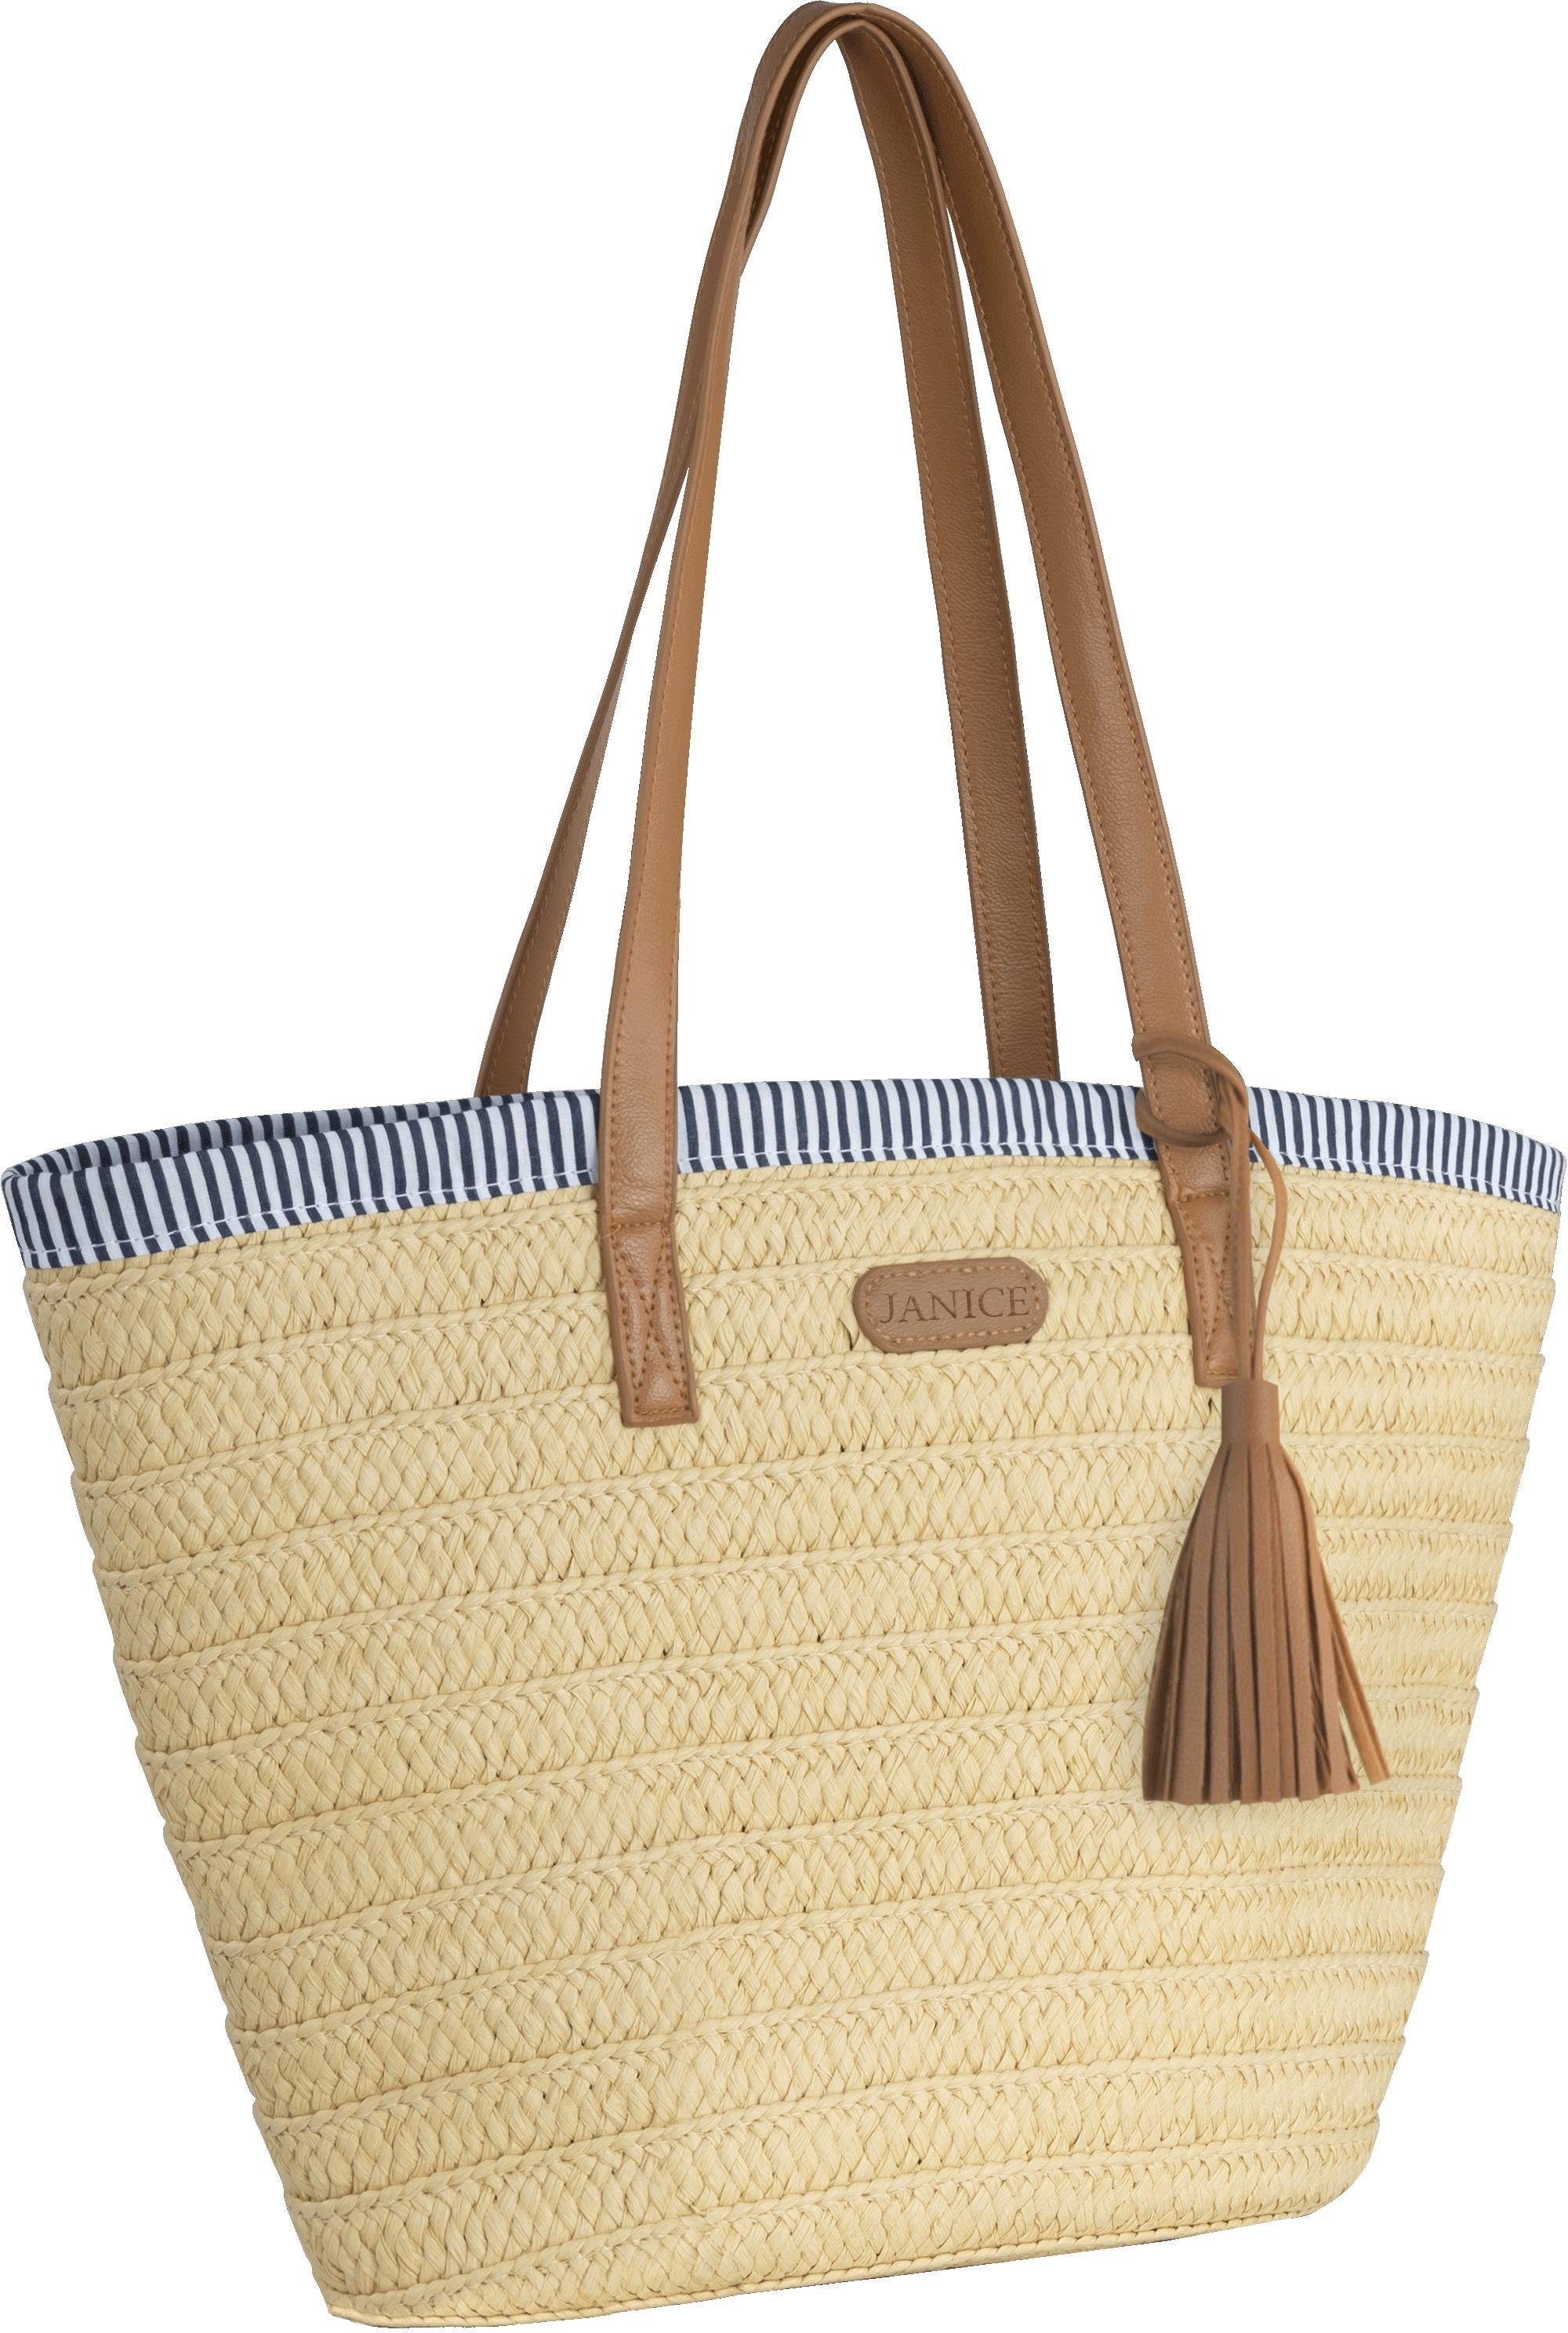 Strandtasche Stroh Mindanao, Liter Maritim-Look Damen 10 Janice Strandtasche aus im Sommertasche für